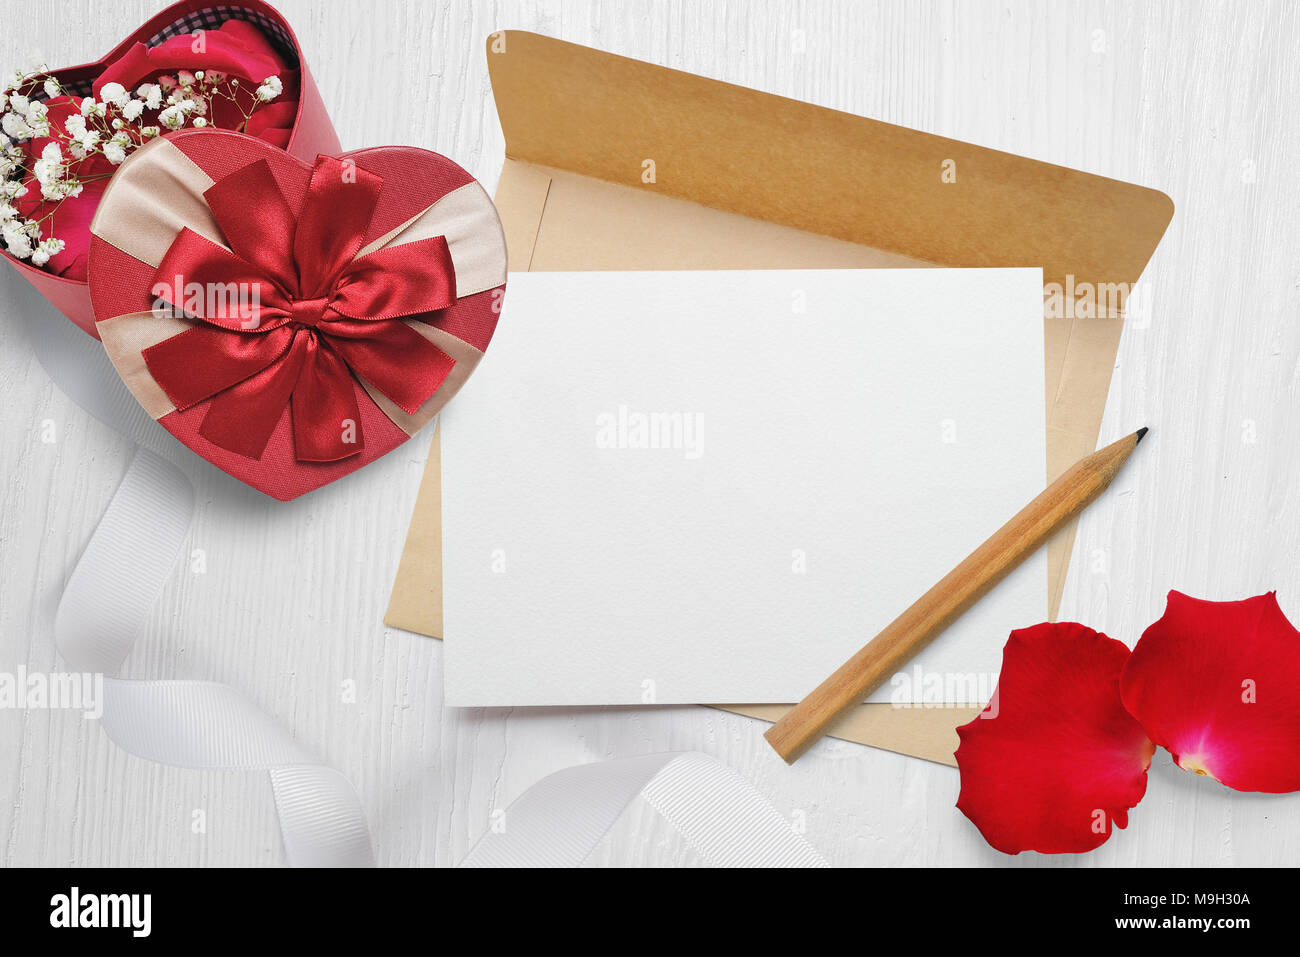 Enveloppe kraft maquette et une lettre avec un cadeau en forme de cœur avec un arc rouge et pétales de rose, carte de souhaits pour la Saint-Valentin avec place pour votre texte. Mise à plat, haut voir photo maquette Banque D'Images